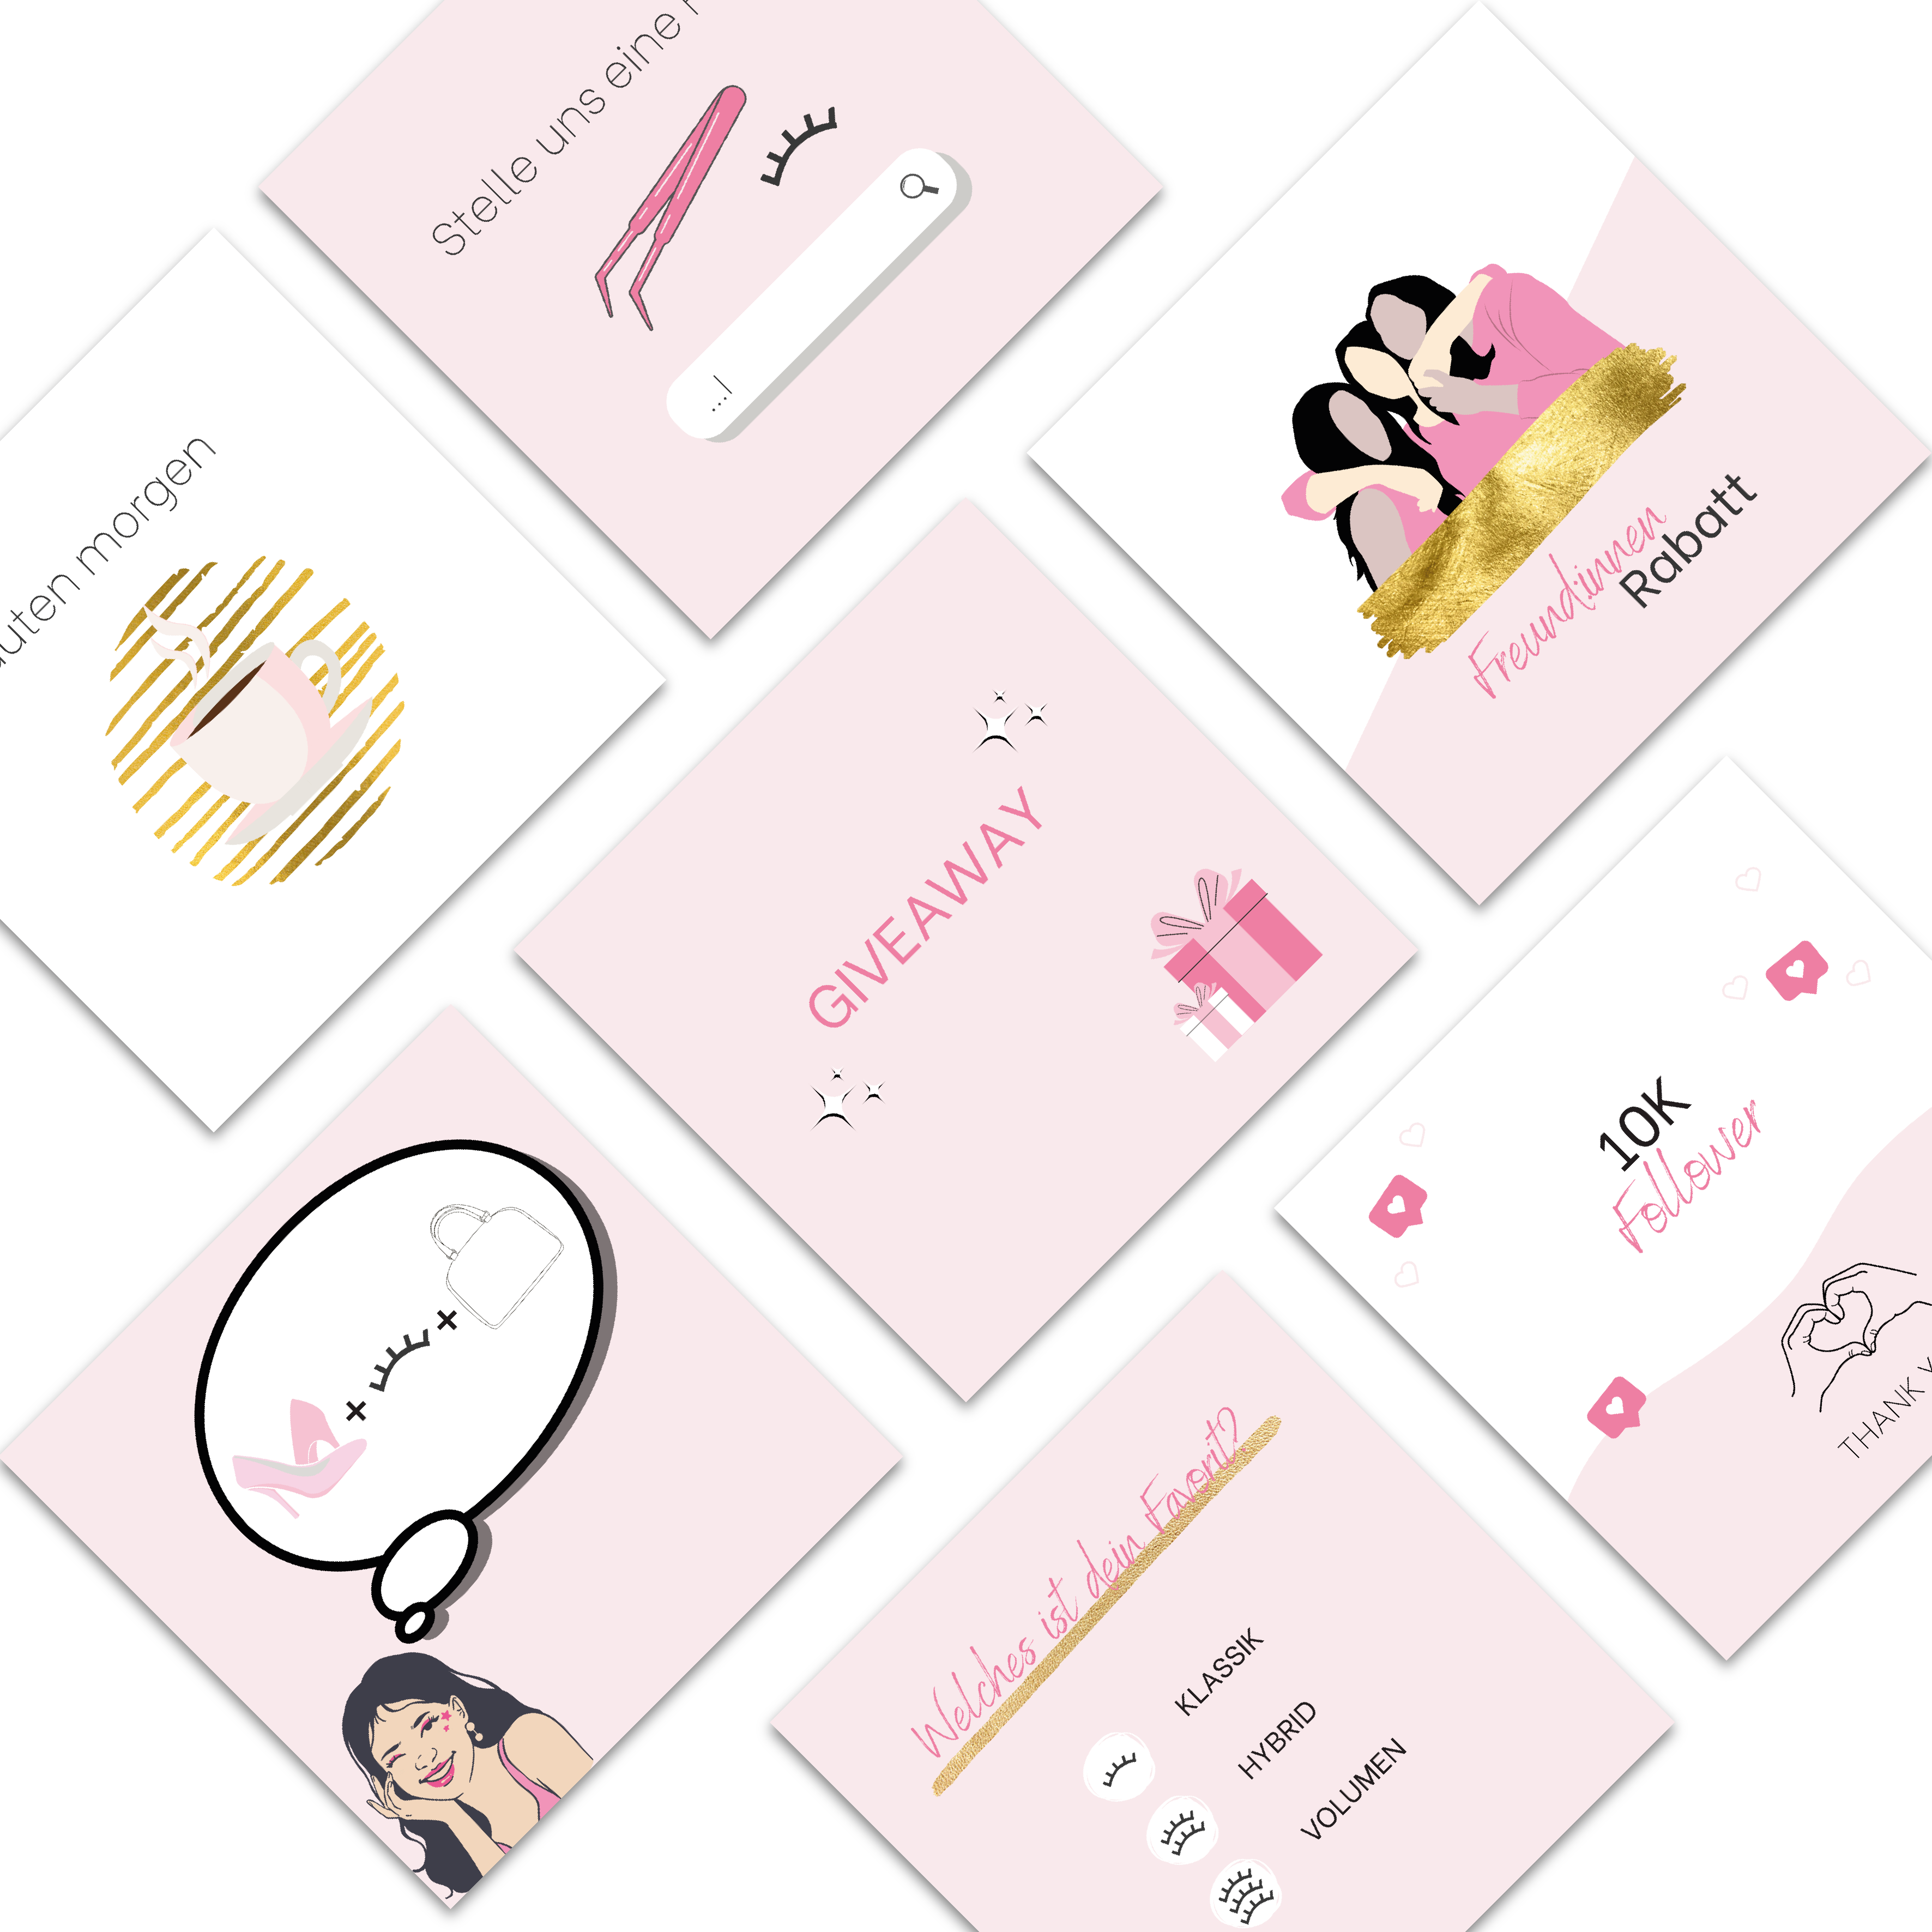 60 Instagram post templates for eyelash stylists - eyelash studio - pink